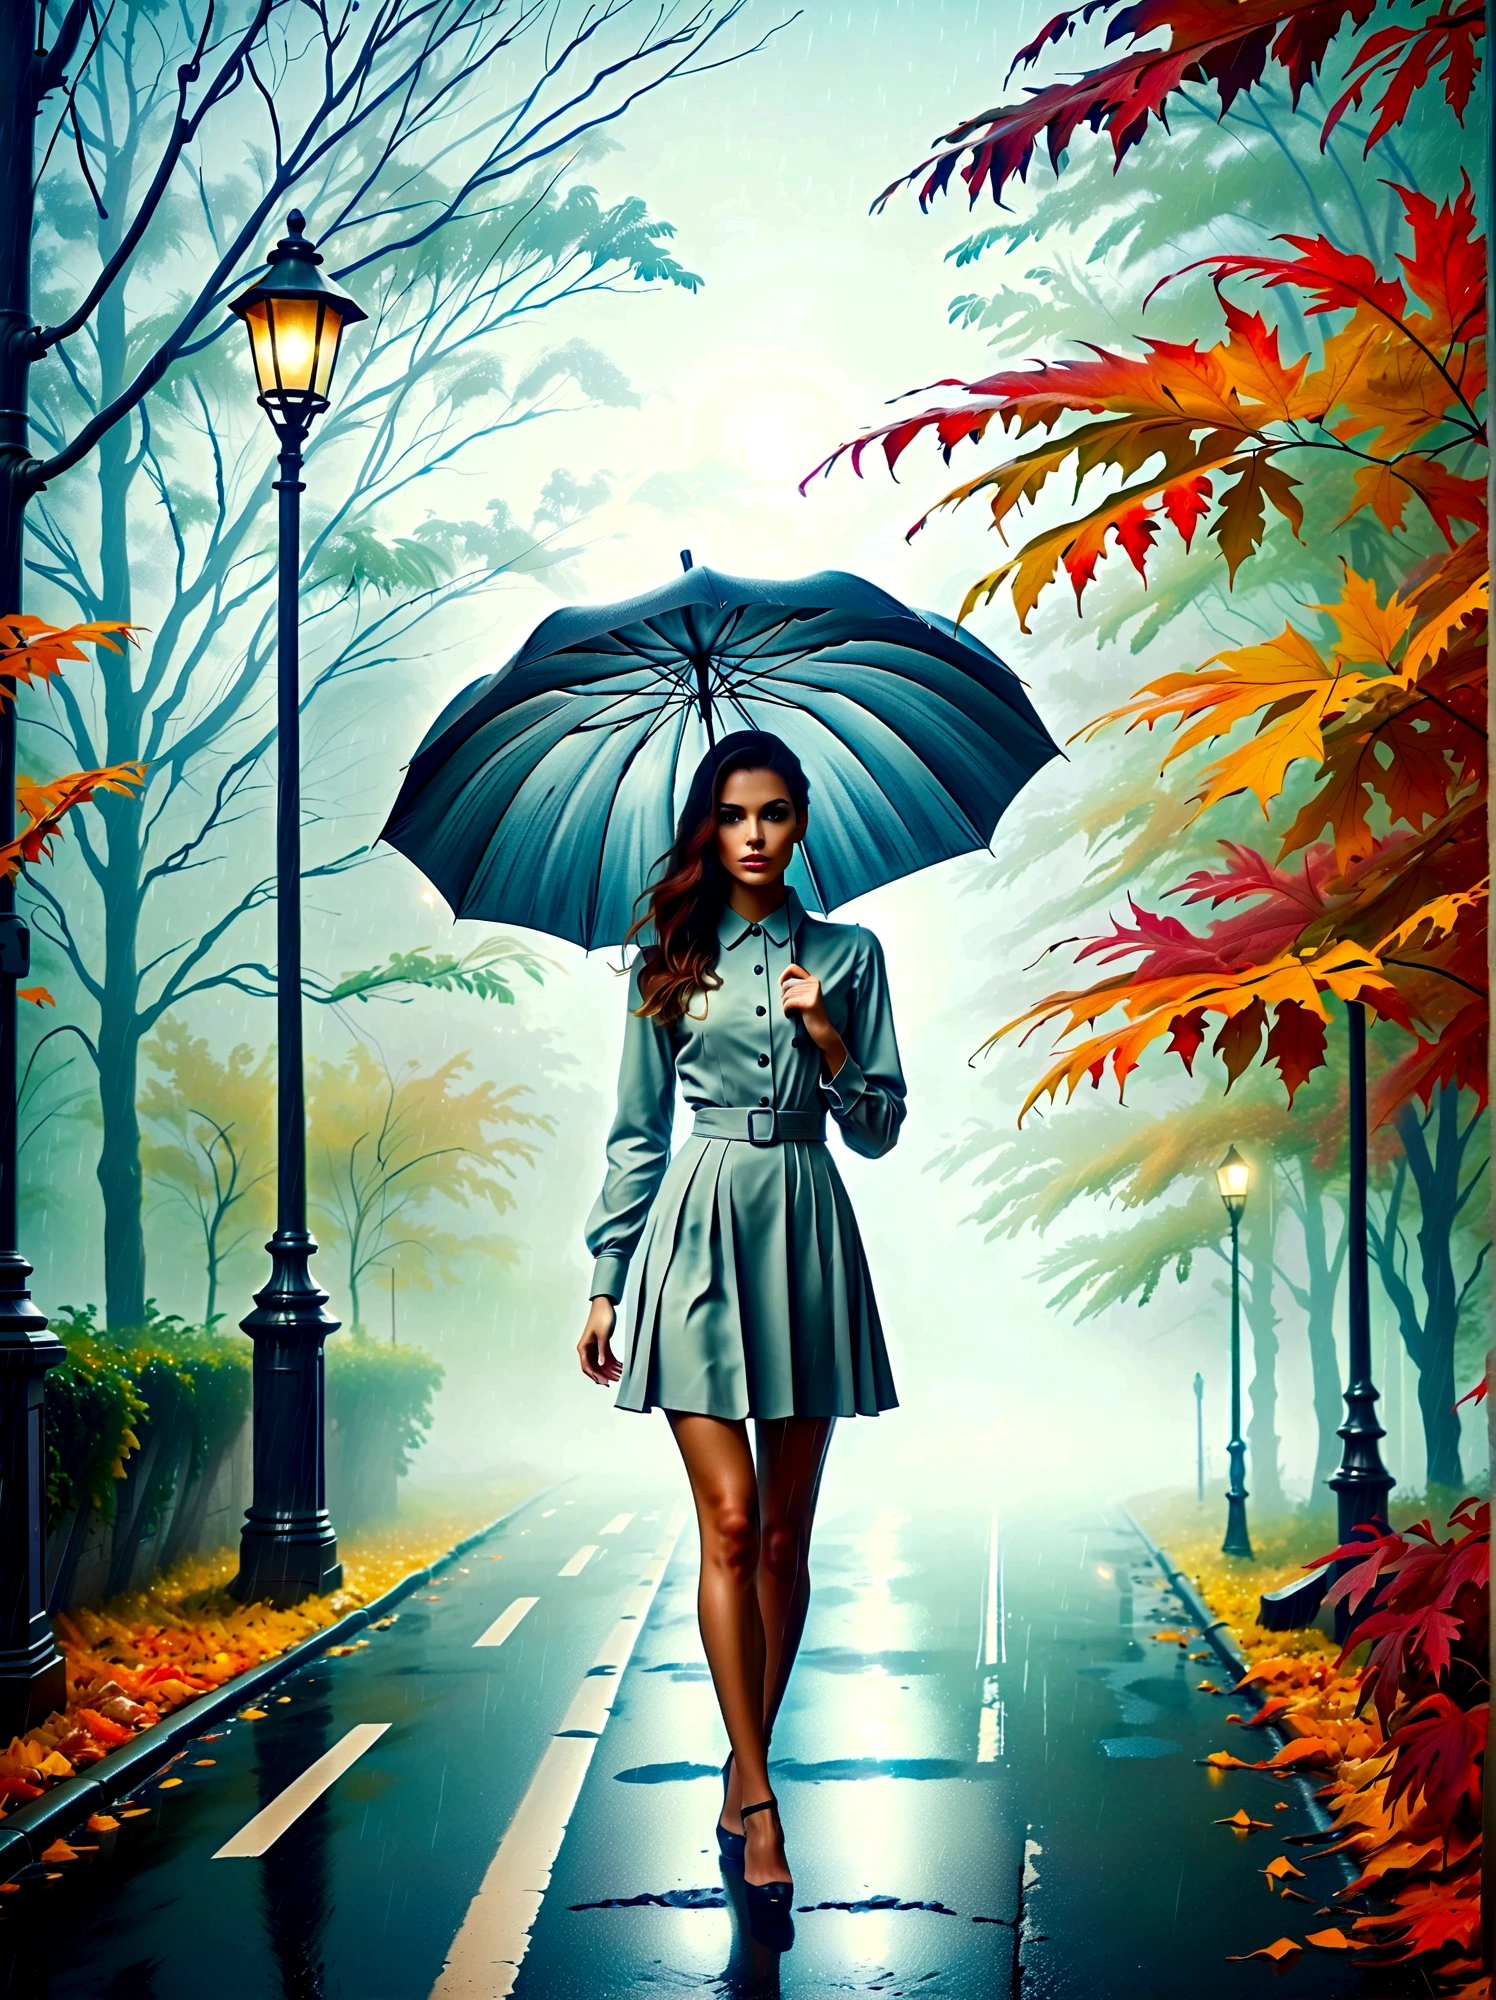 امرأة ترتدي فستانًا ضيقًا وتحمل مظلة في يدها, in einer ضبابيen Stadt, أوراق الخريف الملونة في الشارع, صورة كونو فيبر, الفائز في مسابقة بيكساباي, الفن التصوري, يقف تحت المطر,  mysterious امرأة, بنت جميلة, الذي يقف في المطر, شخص واحد مع مظلة, امرأة ((خيال)), ((ضبابي)) وممطر, صورة أنثى في الظل, في بيئة ممطرة, طقس ممطر, الطرق الممطرة في الخلفية , ((ضباب مع ضوء)), ((عرض من الخلف)), ضوء من الأمام